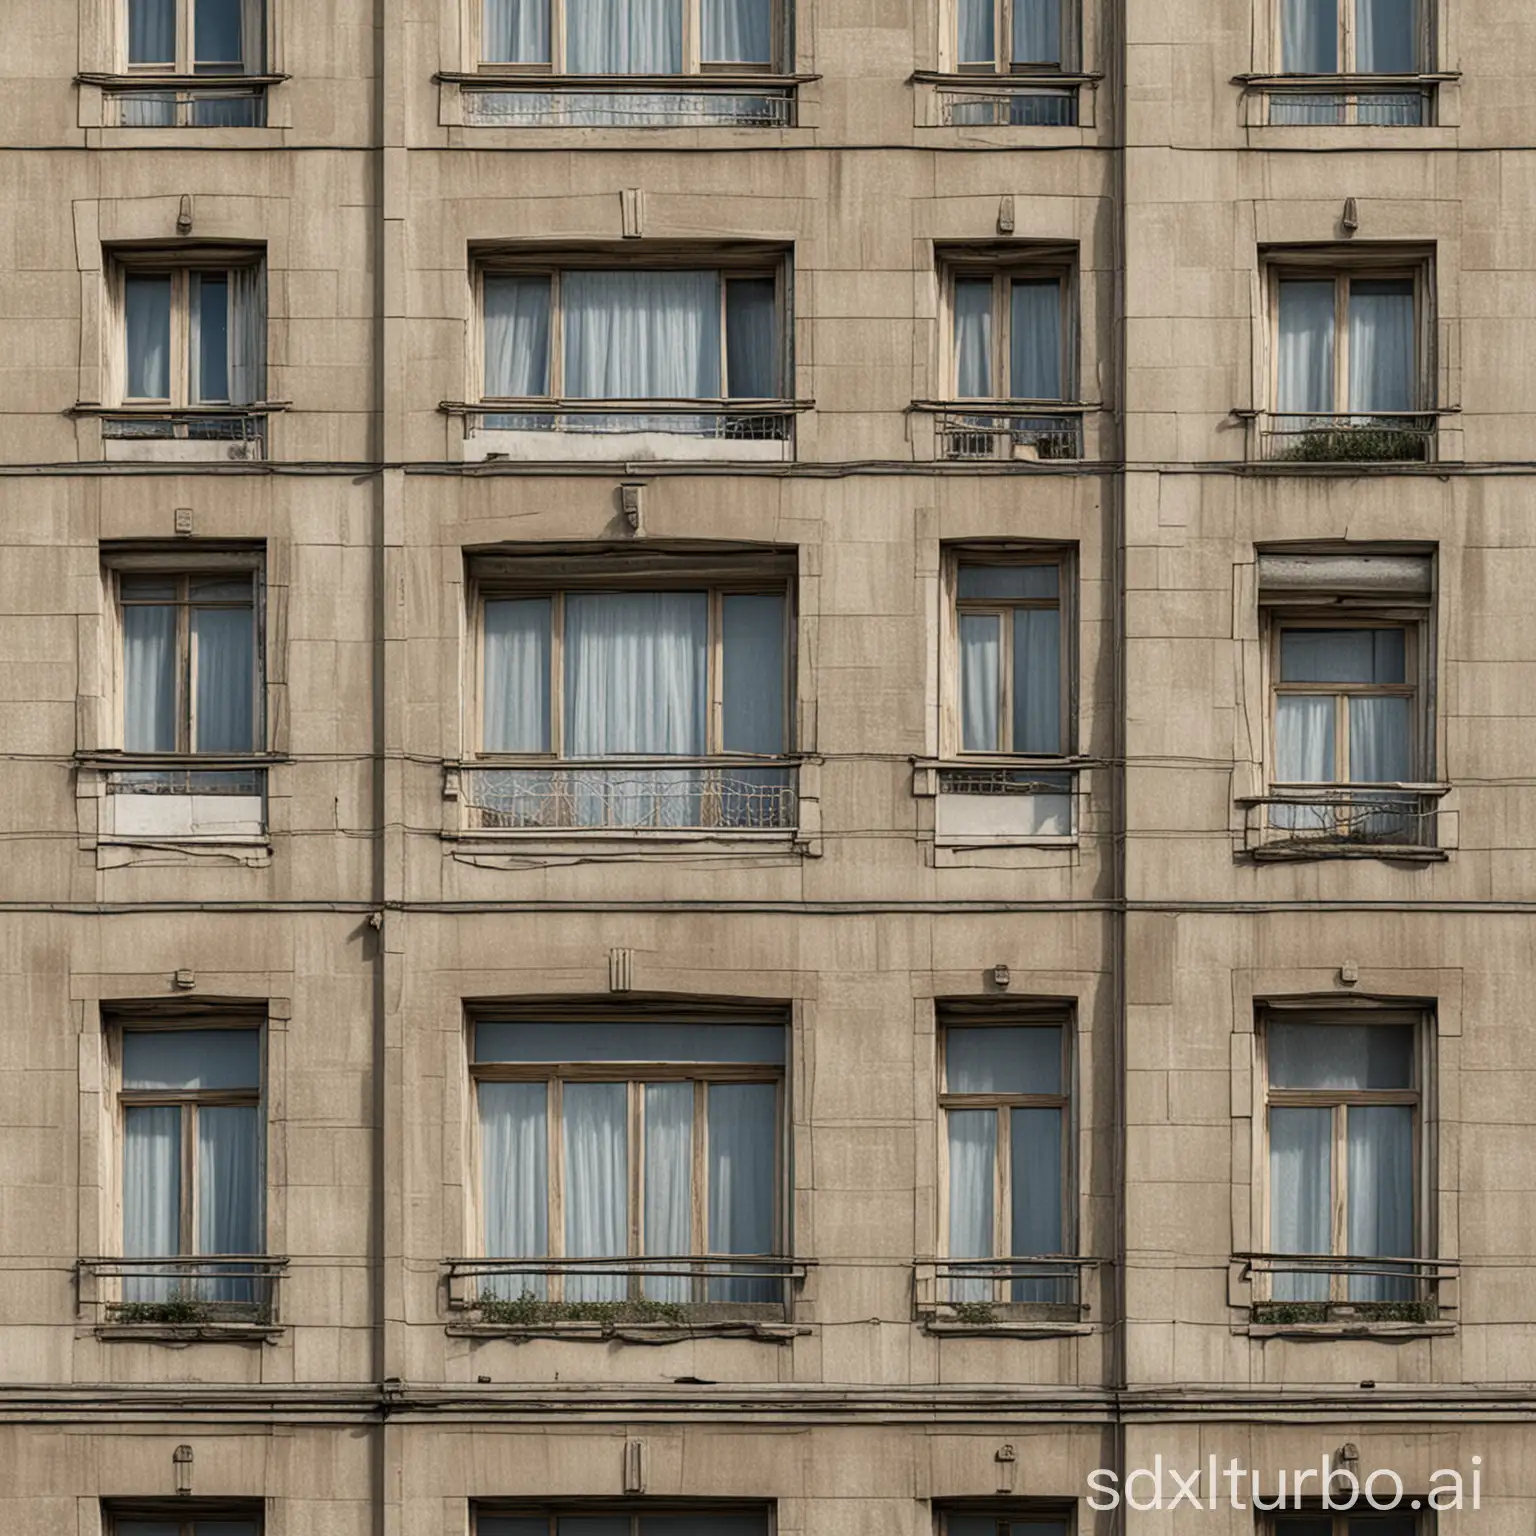 Soviet-Building-Facade-Textured-LowResolution-Urban-Architecture